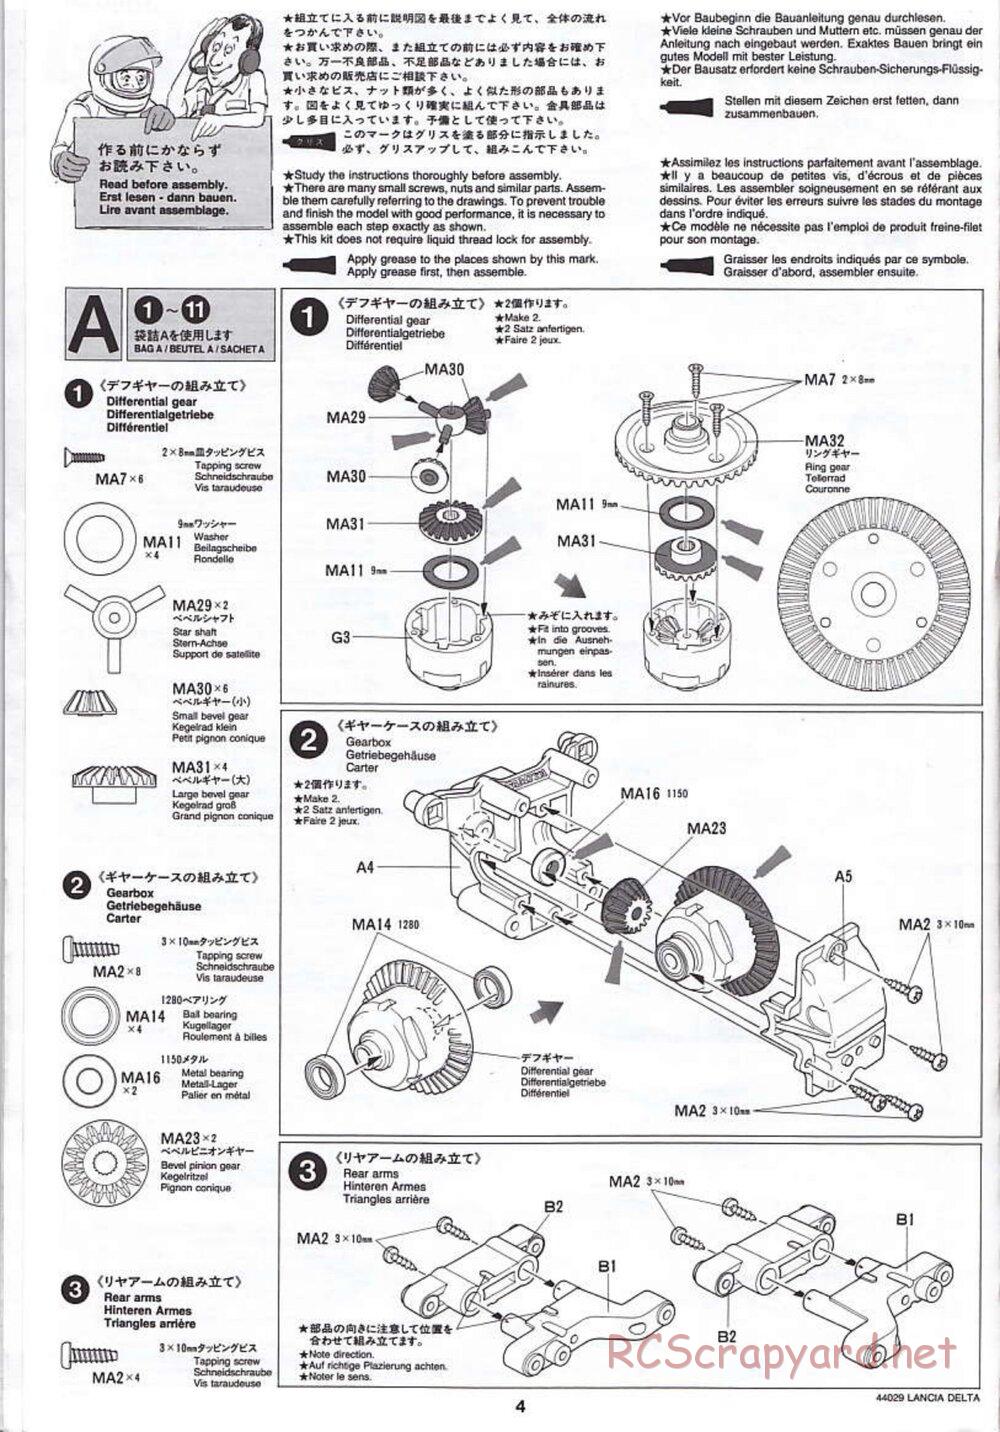 Tamiya - Lancia Delta HF Integrale - TG10 Mk.1 Chassis - Manual - Page 4